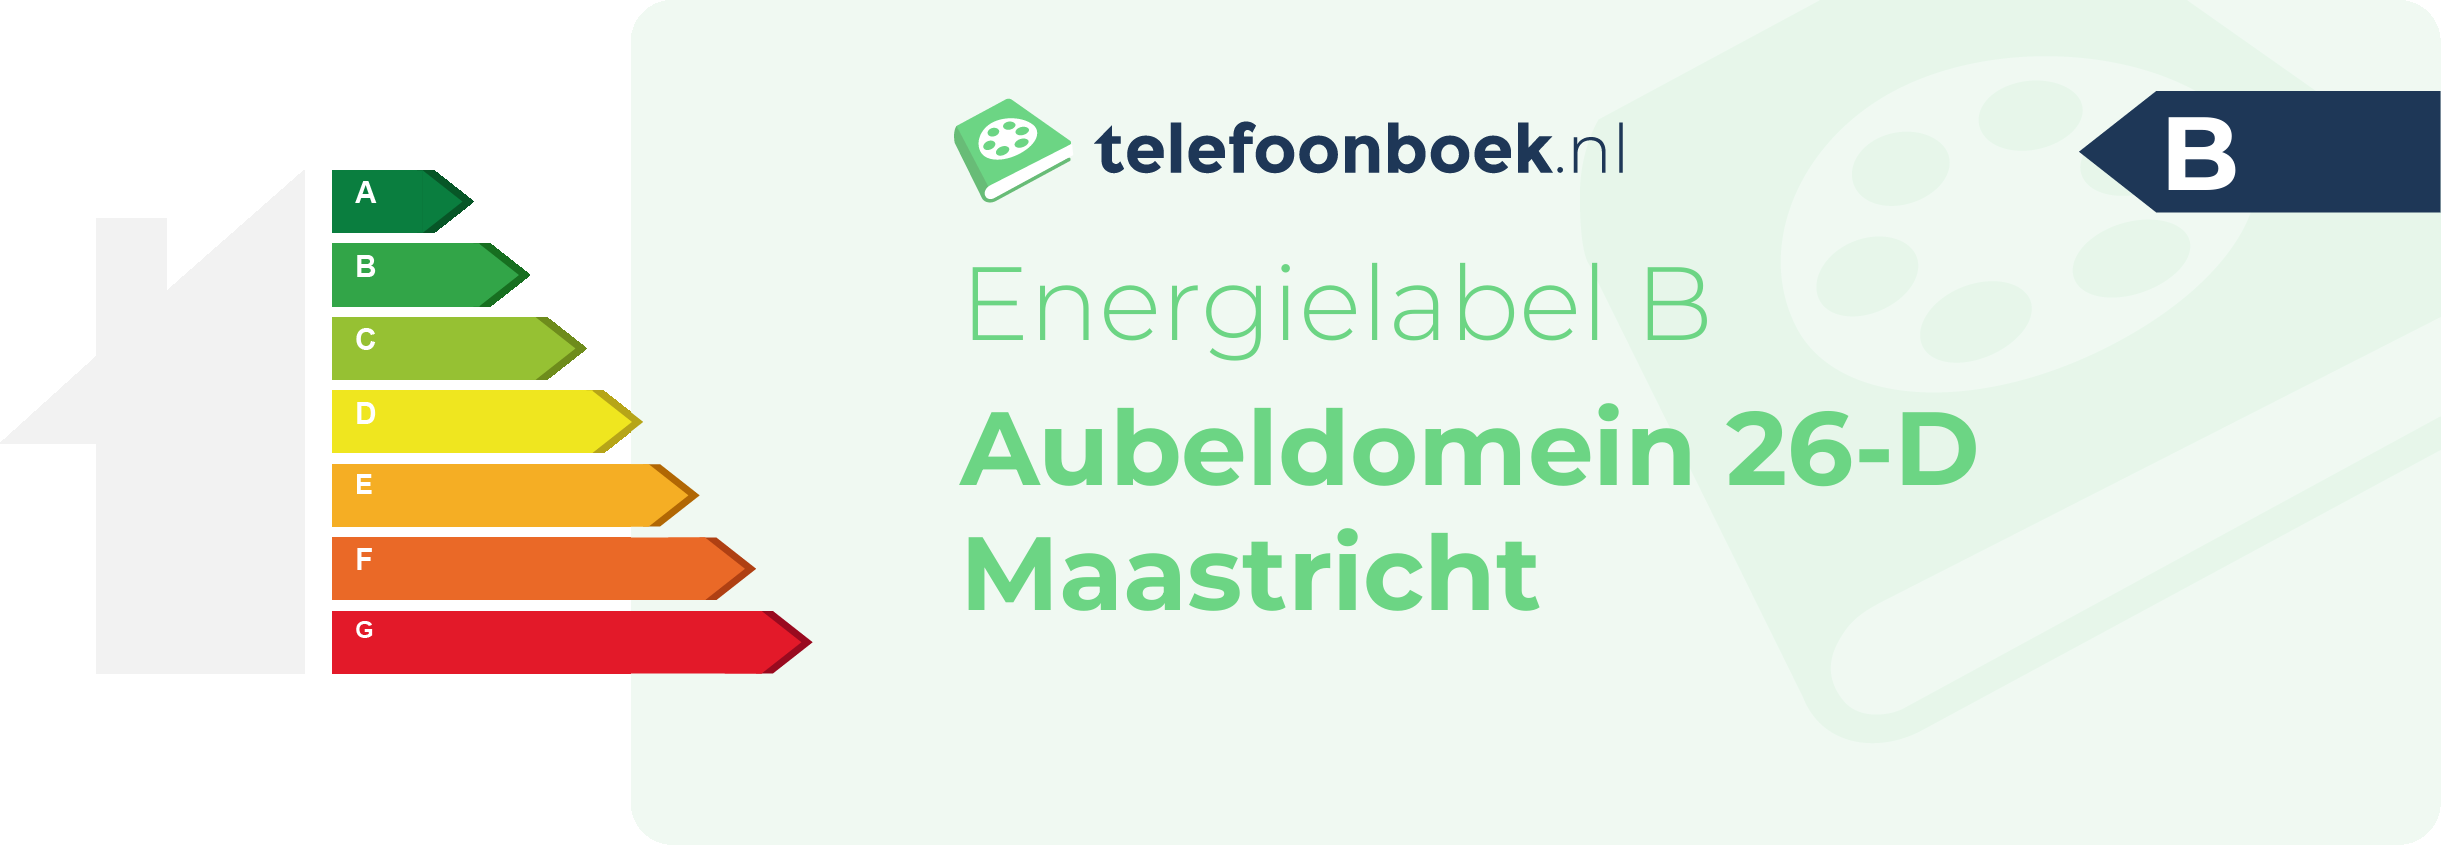 Energielabel Aubeldomein 26-D Maastricht